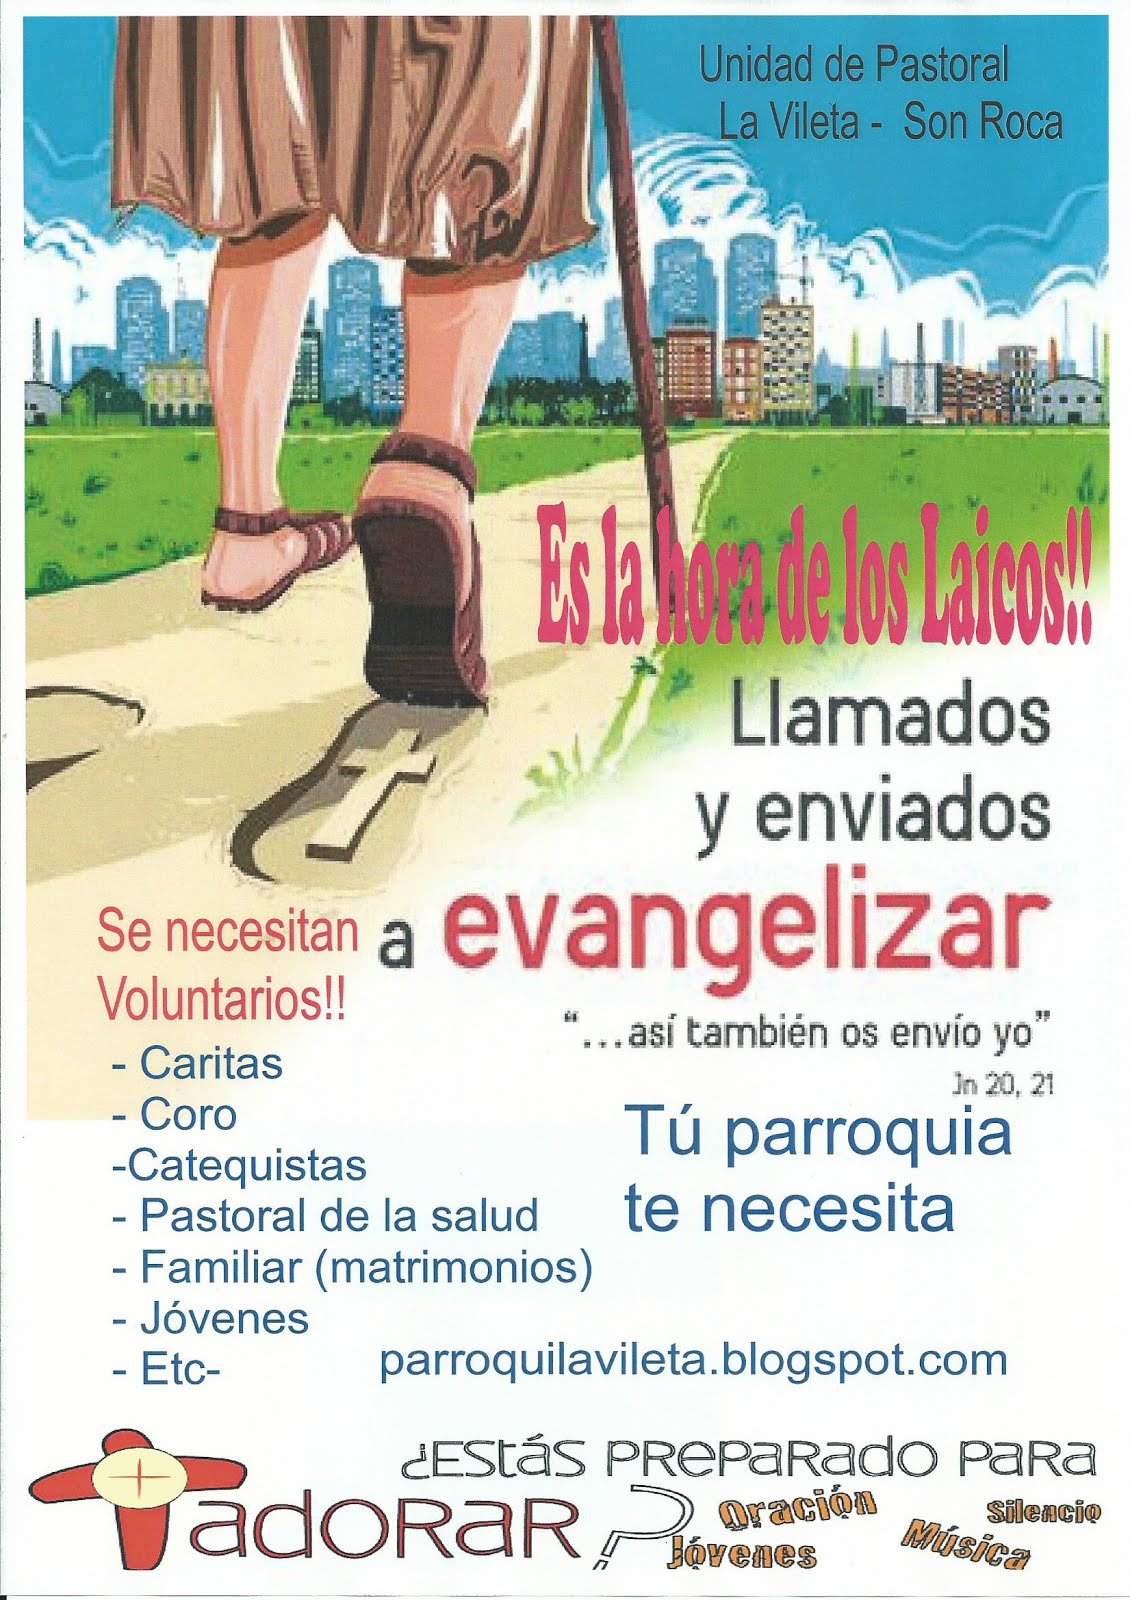 Evangelizar!!